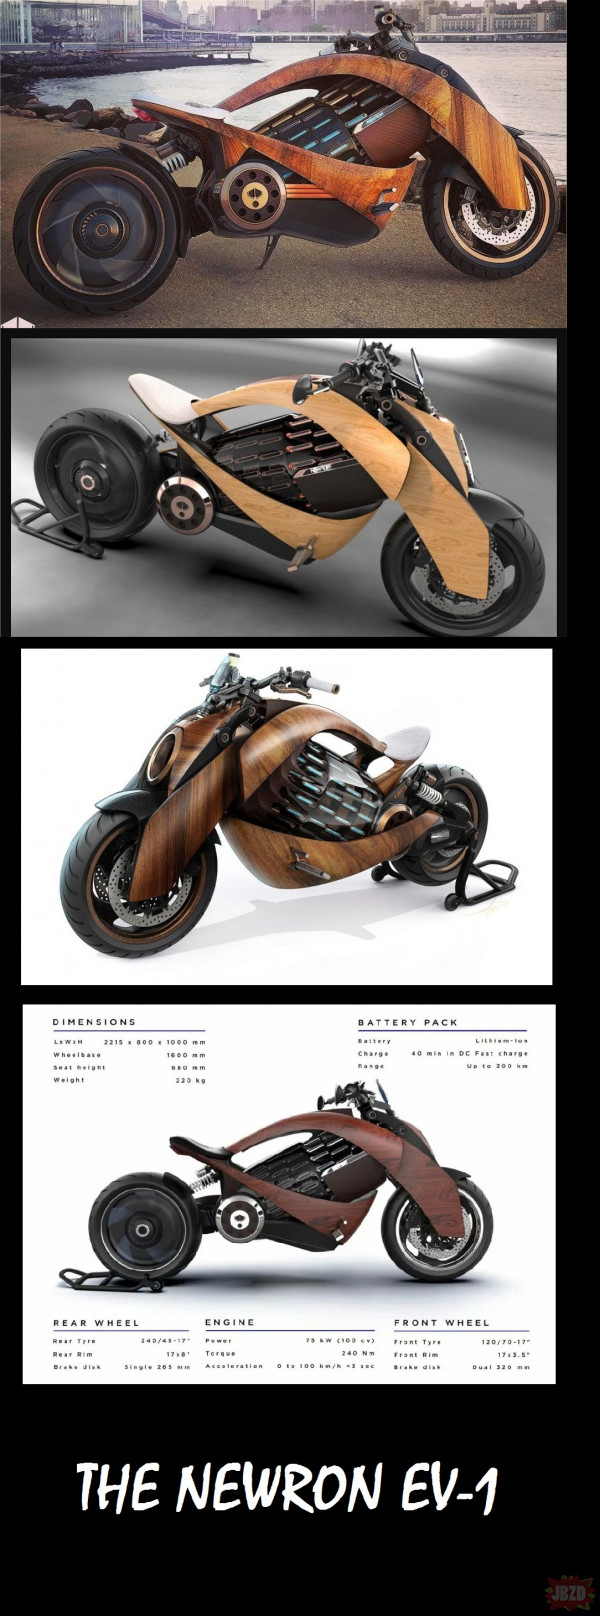 Drewniany motocykl  The Newron EV-1